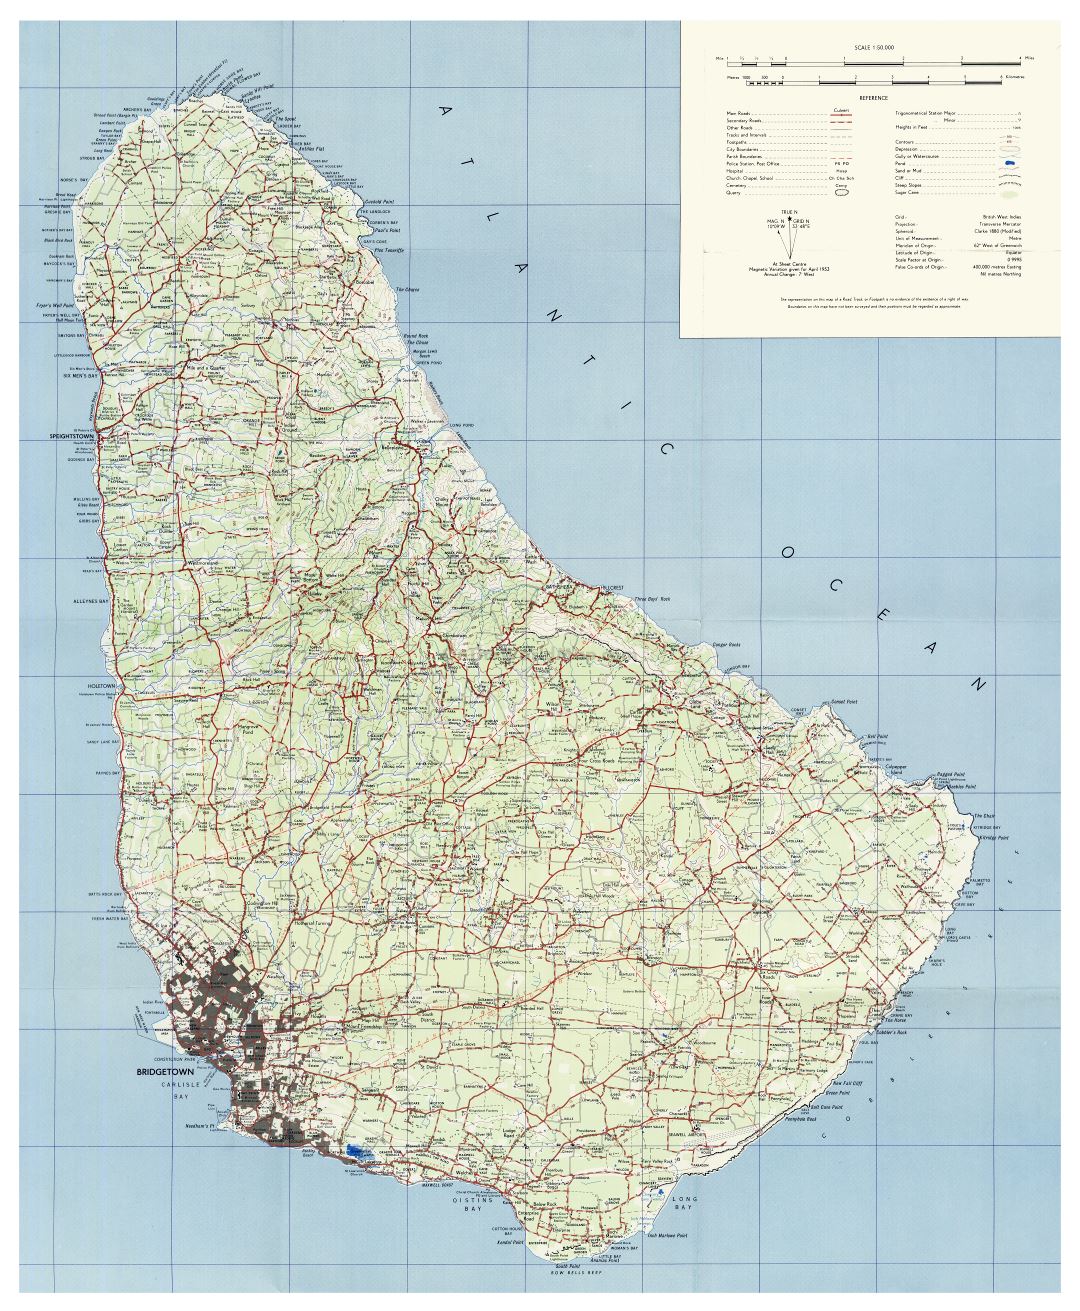 Большая детальная топографическая карта Барбадоса с дорогами, городами, деревнями и другими пометками